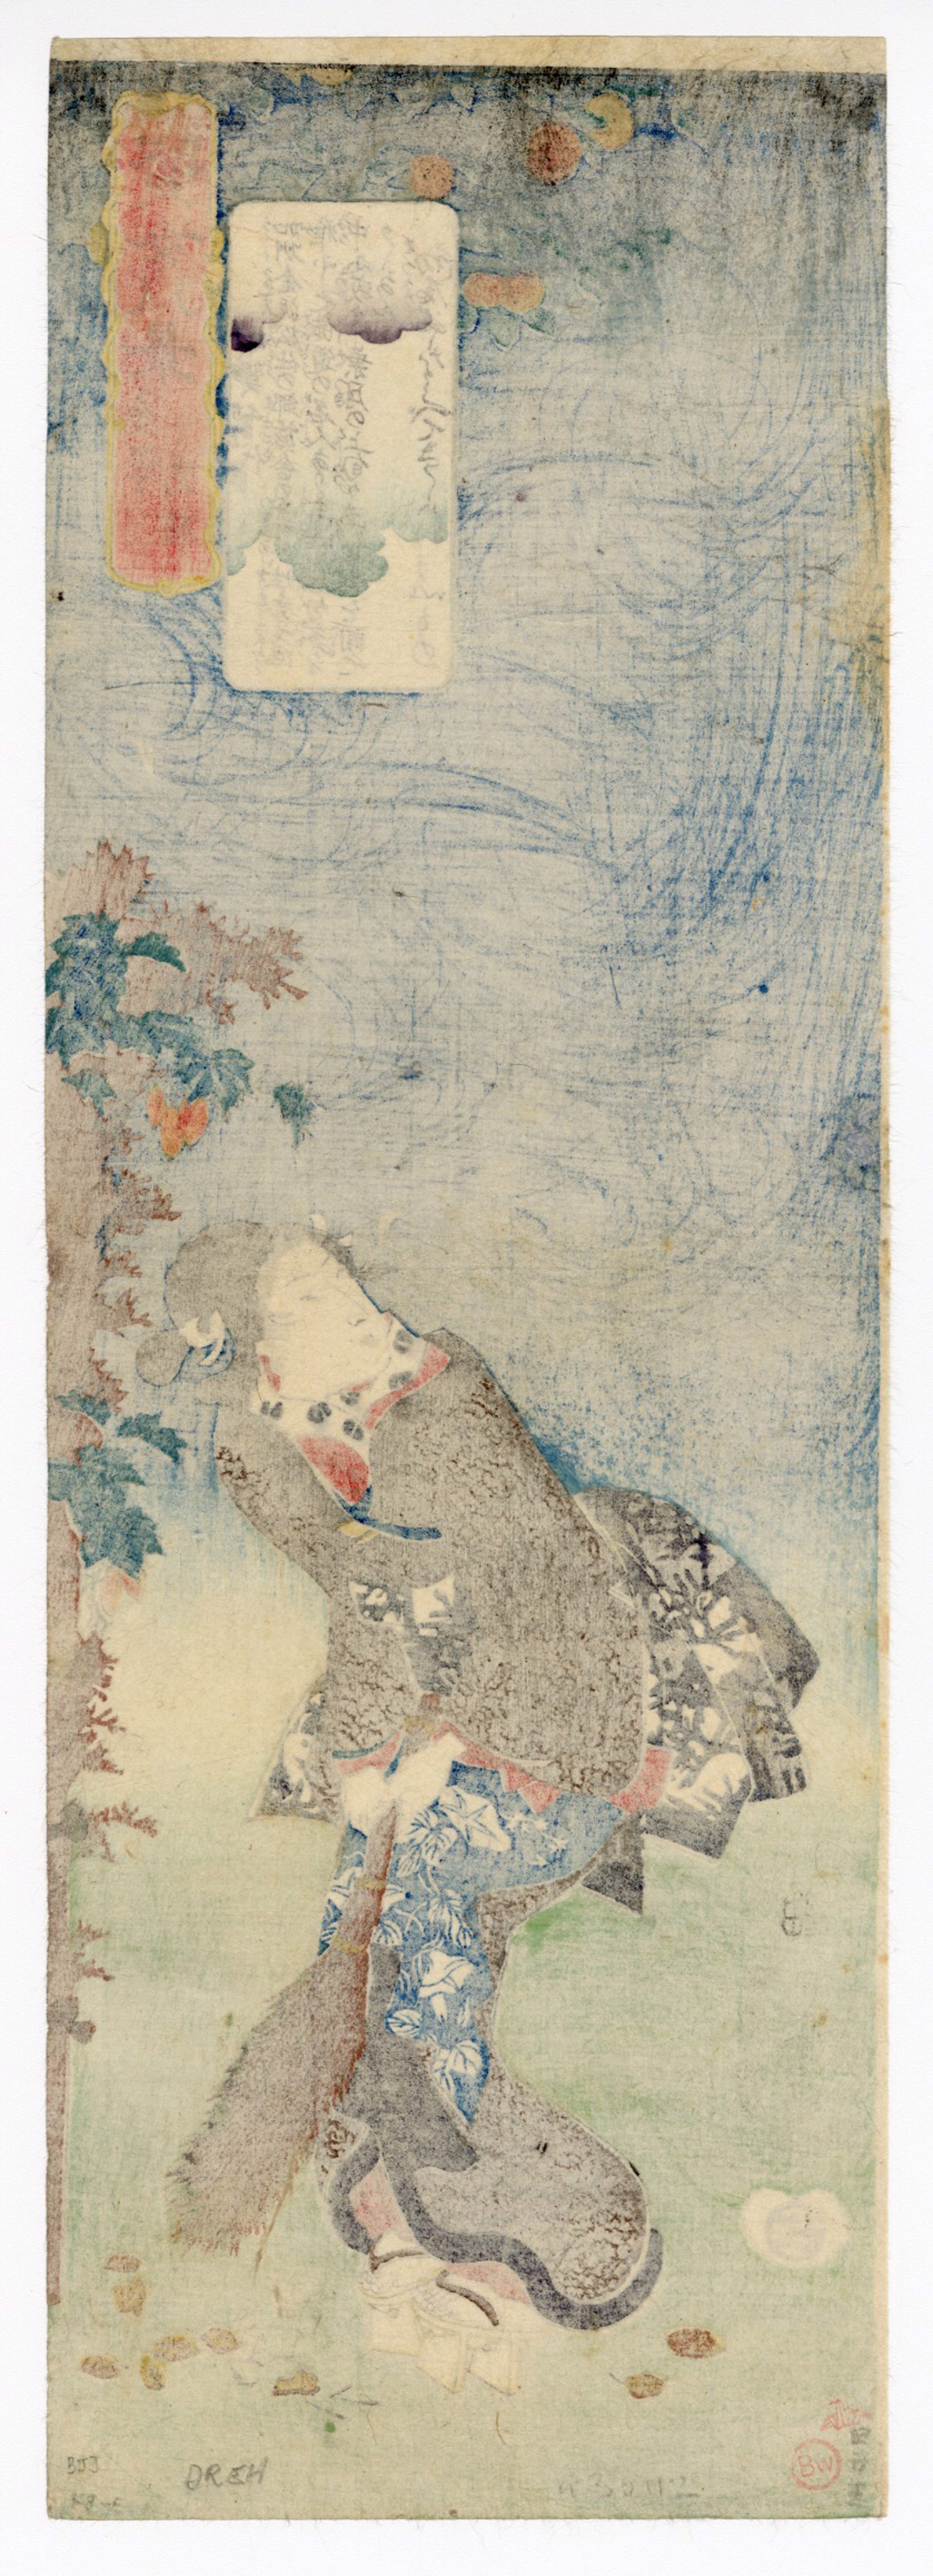 Returning Geese at Kanazawa - The Poetess Chiyo Watching the Geese by Kuniyoshi